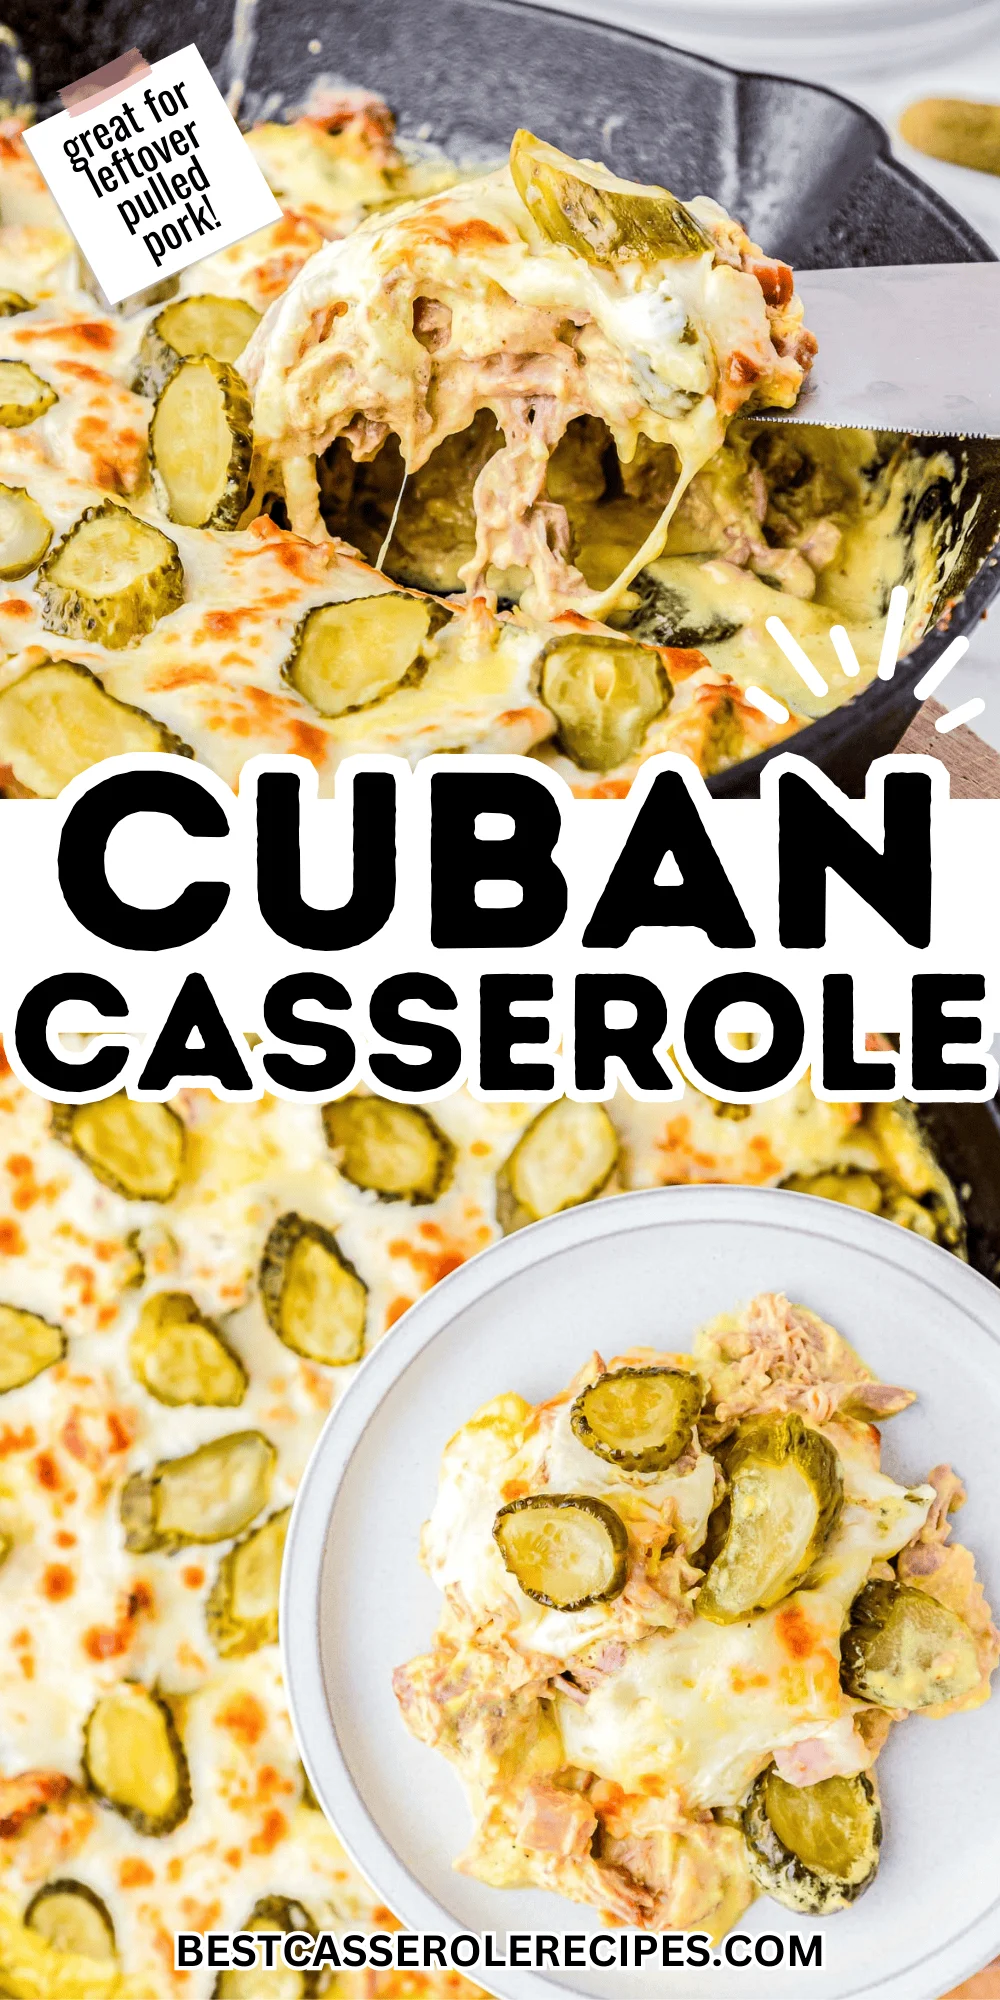 cuban casserole collage